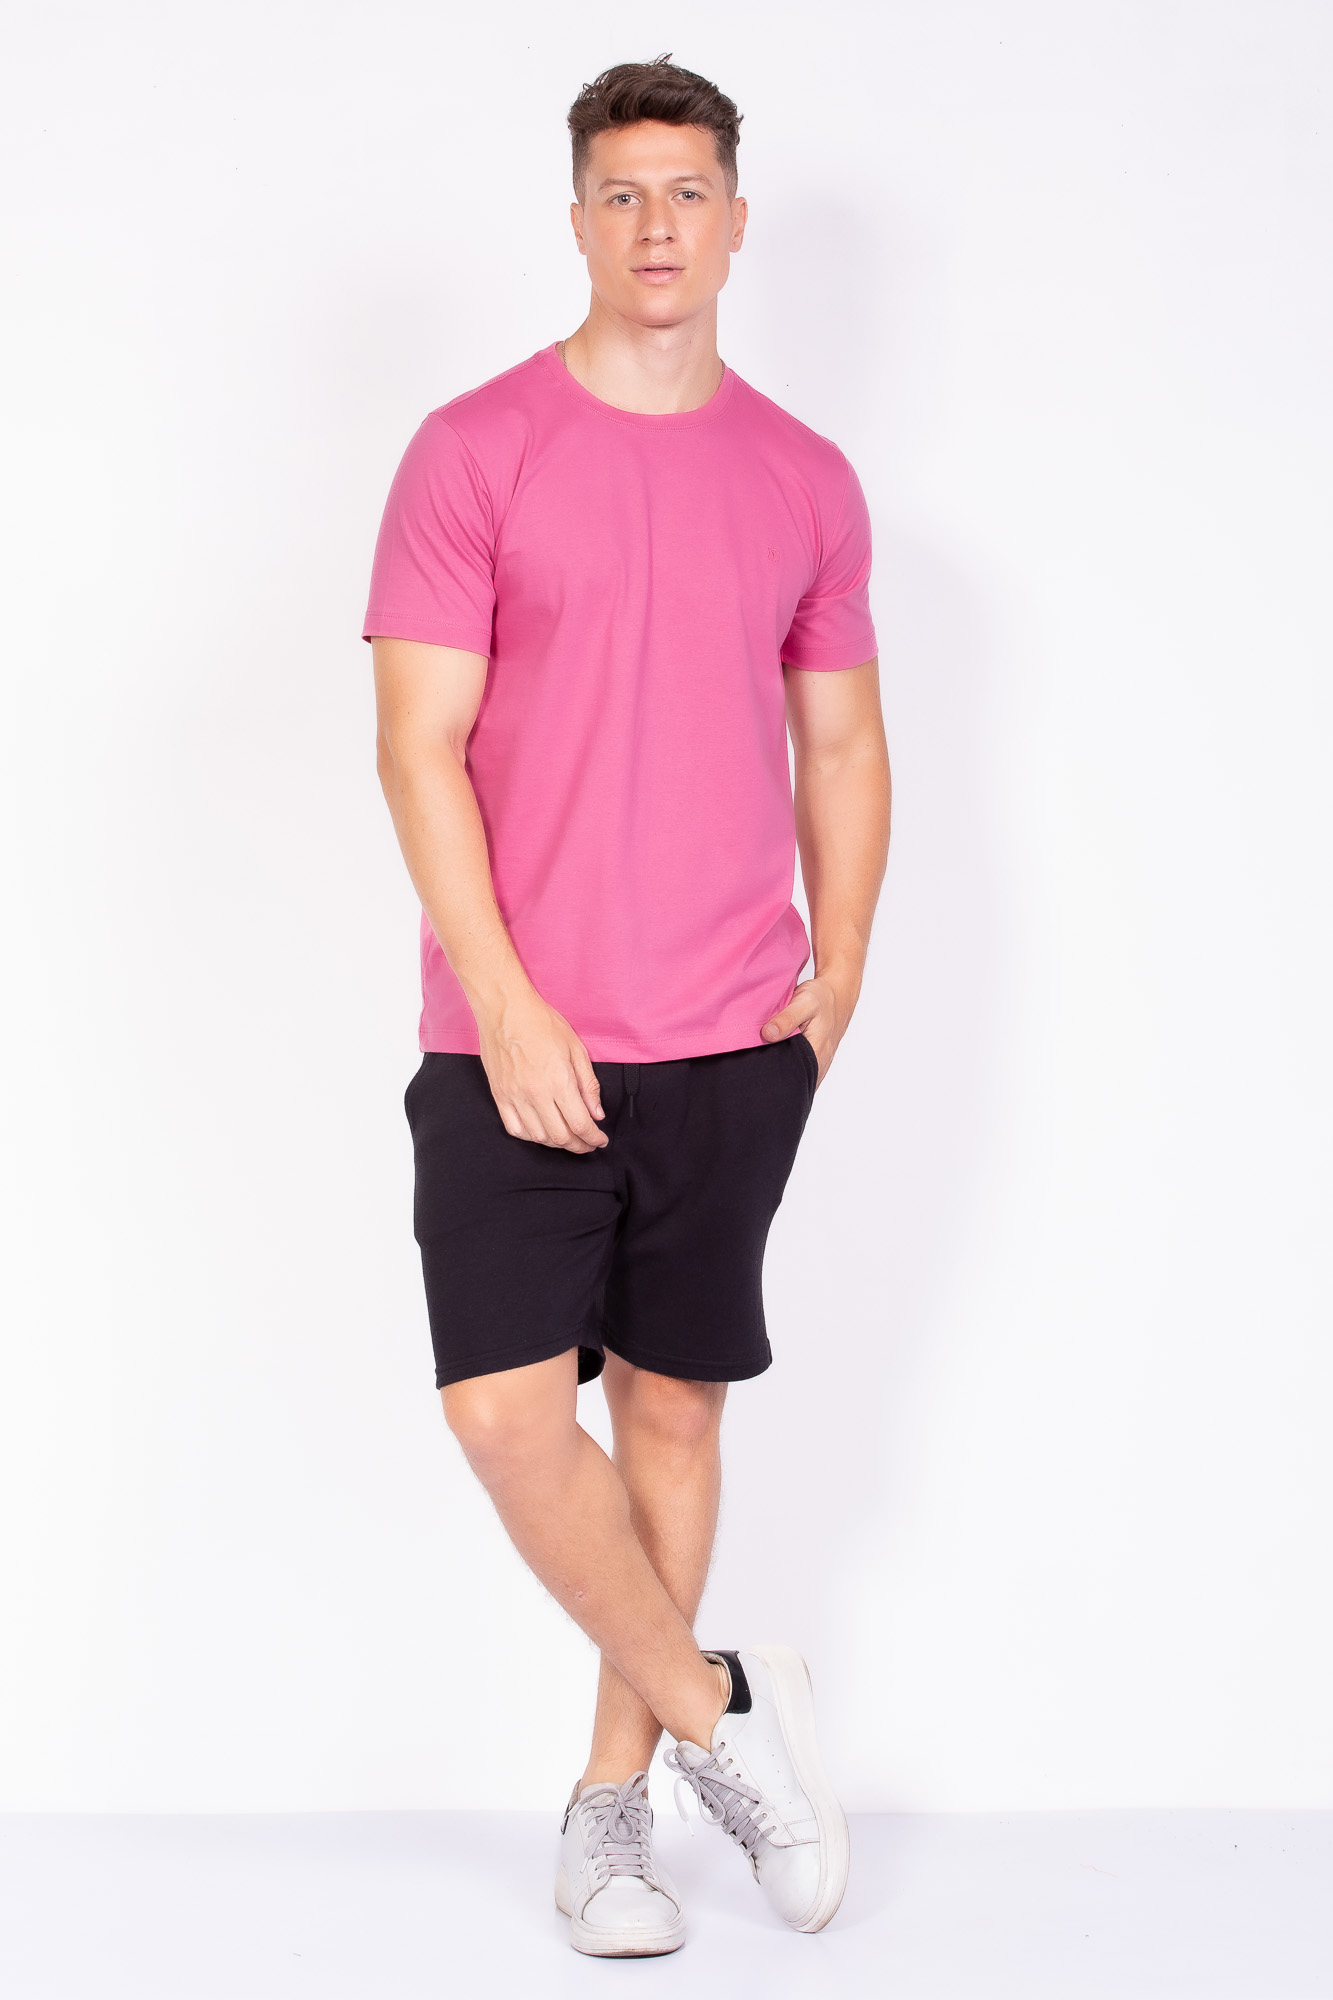 Camiseta Básica 100% algodão rosa chiclete